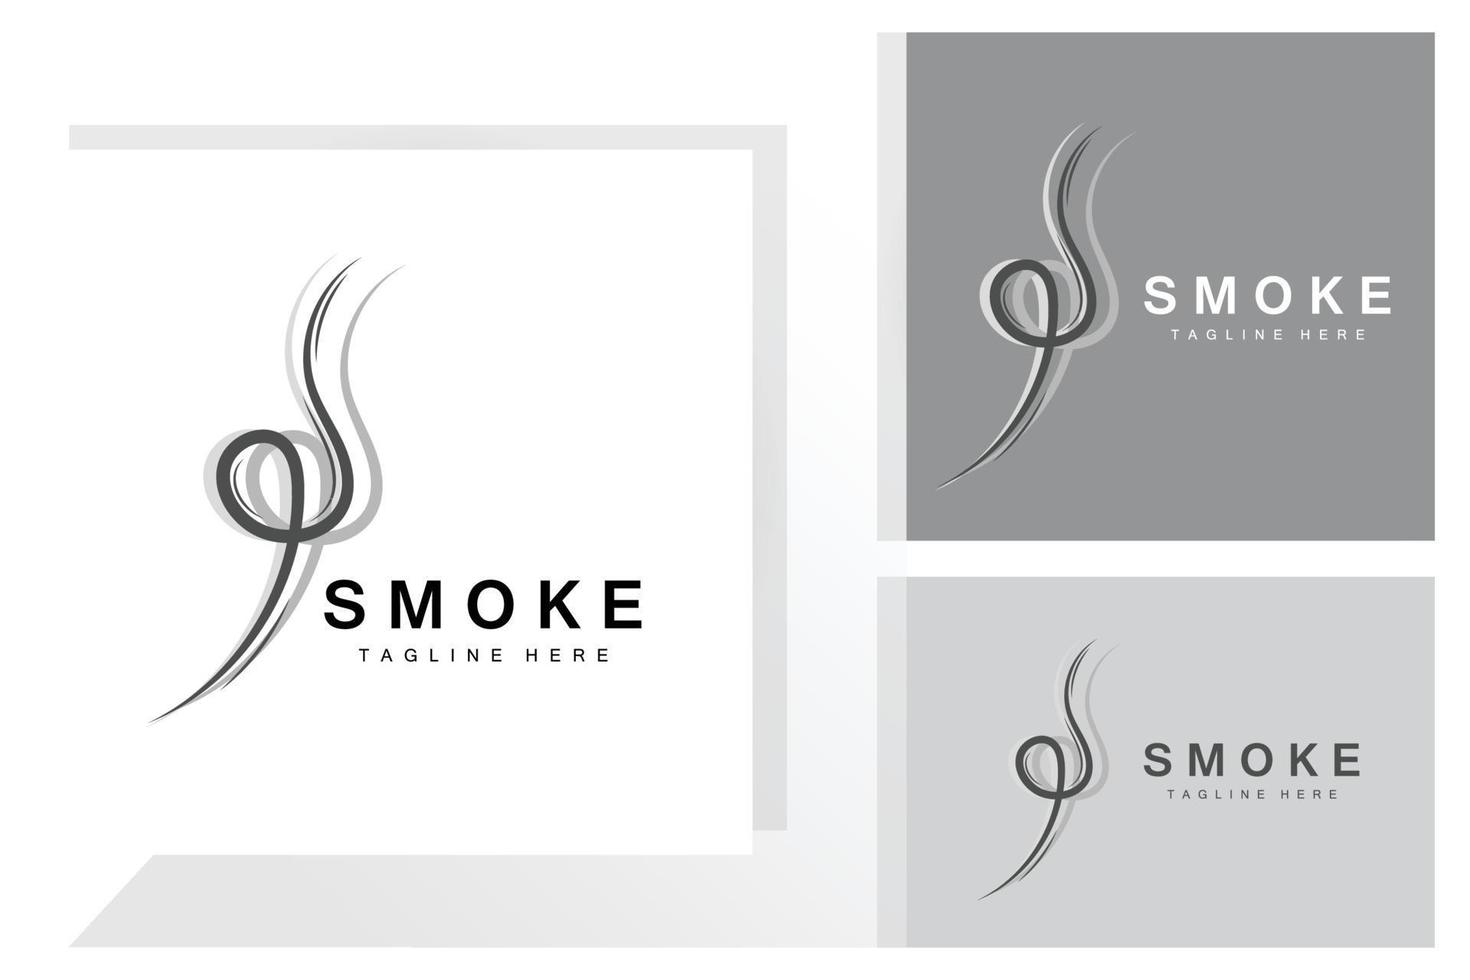 vapor vapor logotipo vetor aroma de evaporação quente. ilustração de linha de cheiro, ícone de vapor para cozinhar, trem a vapor, assar, fumar